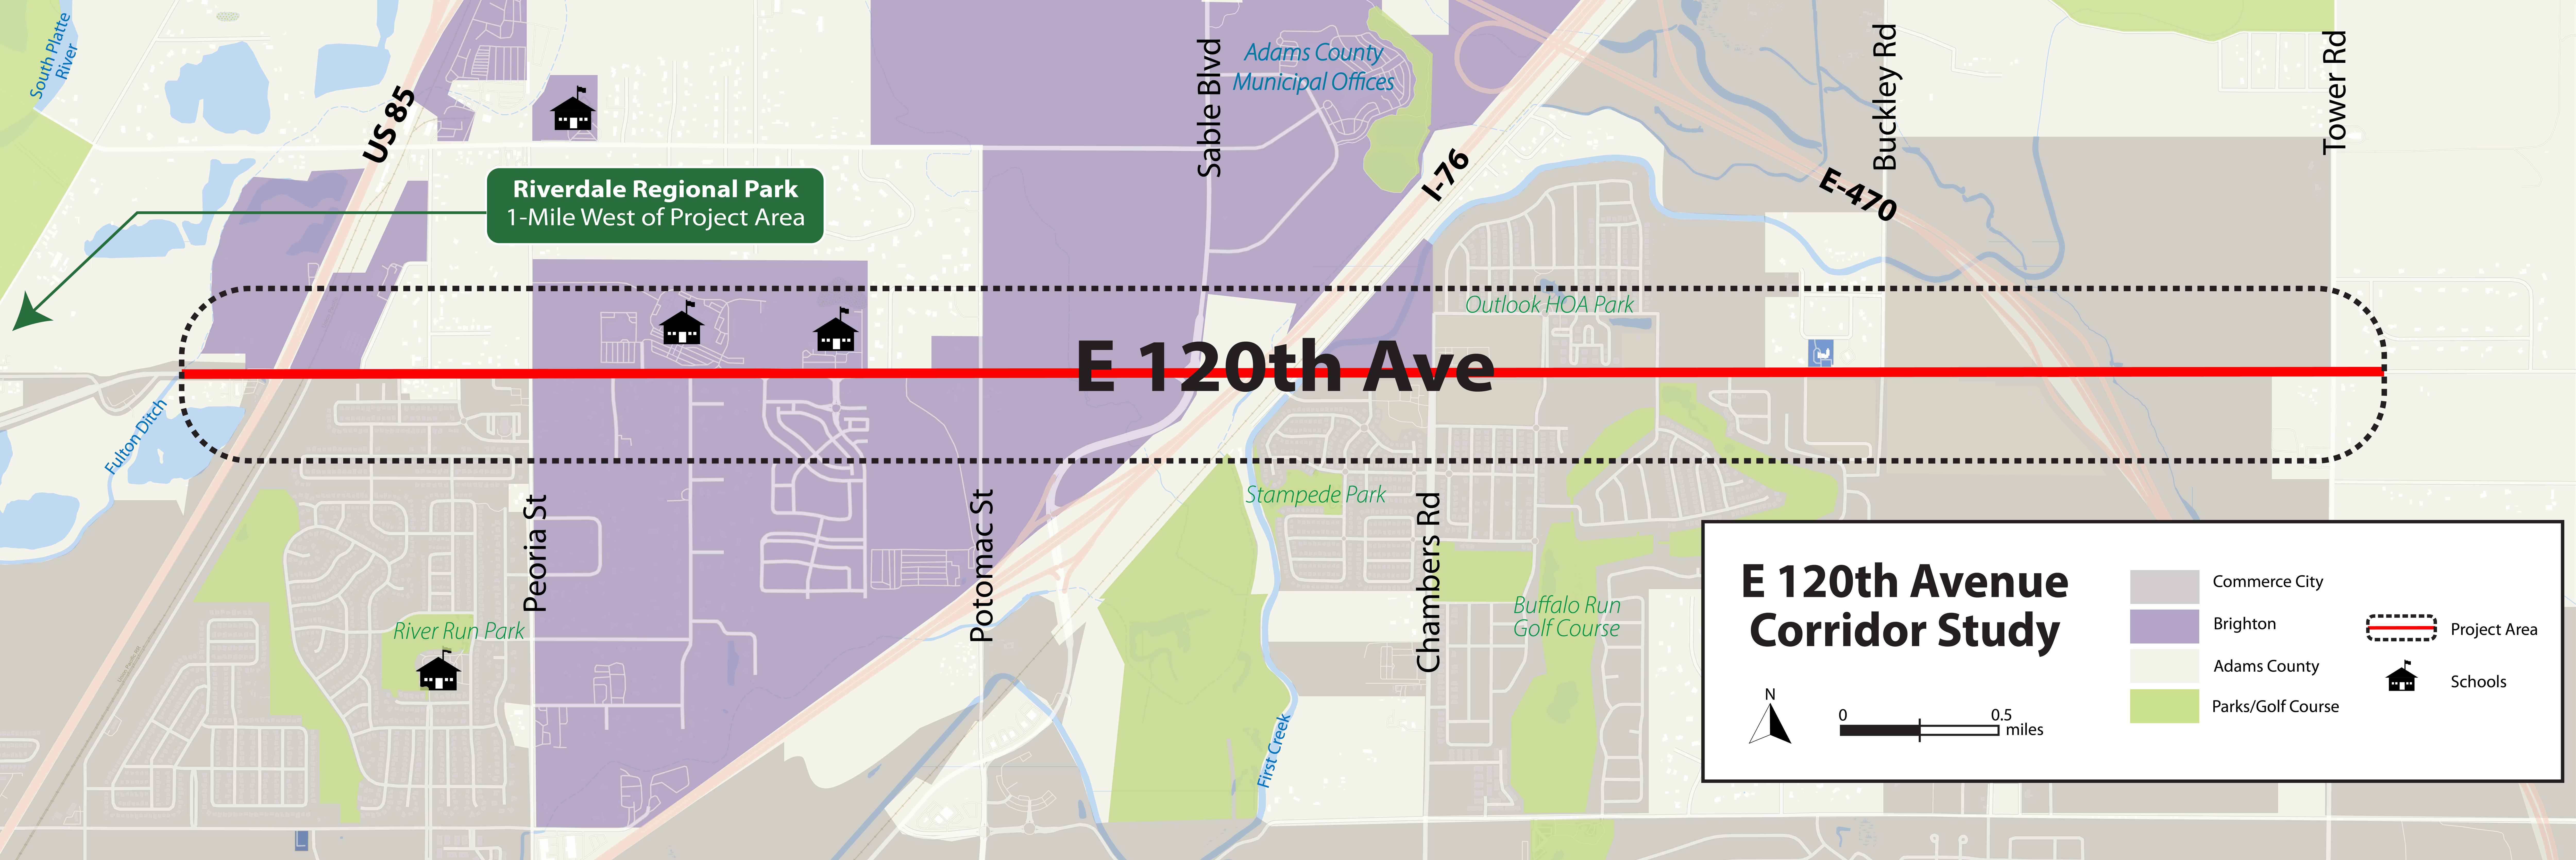 E. 120th Ave Corridor Study Map